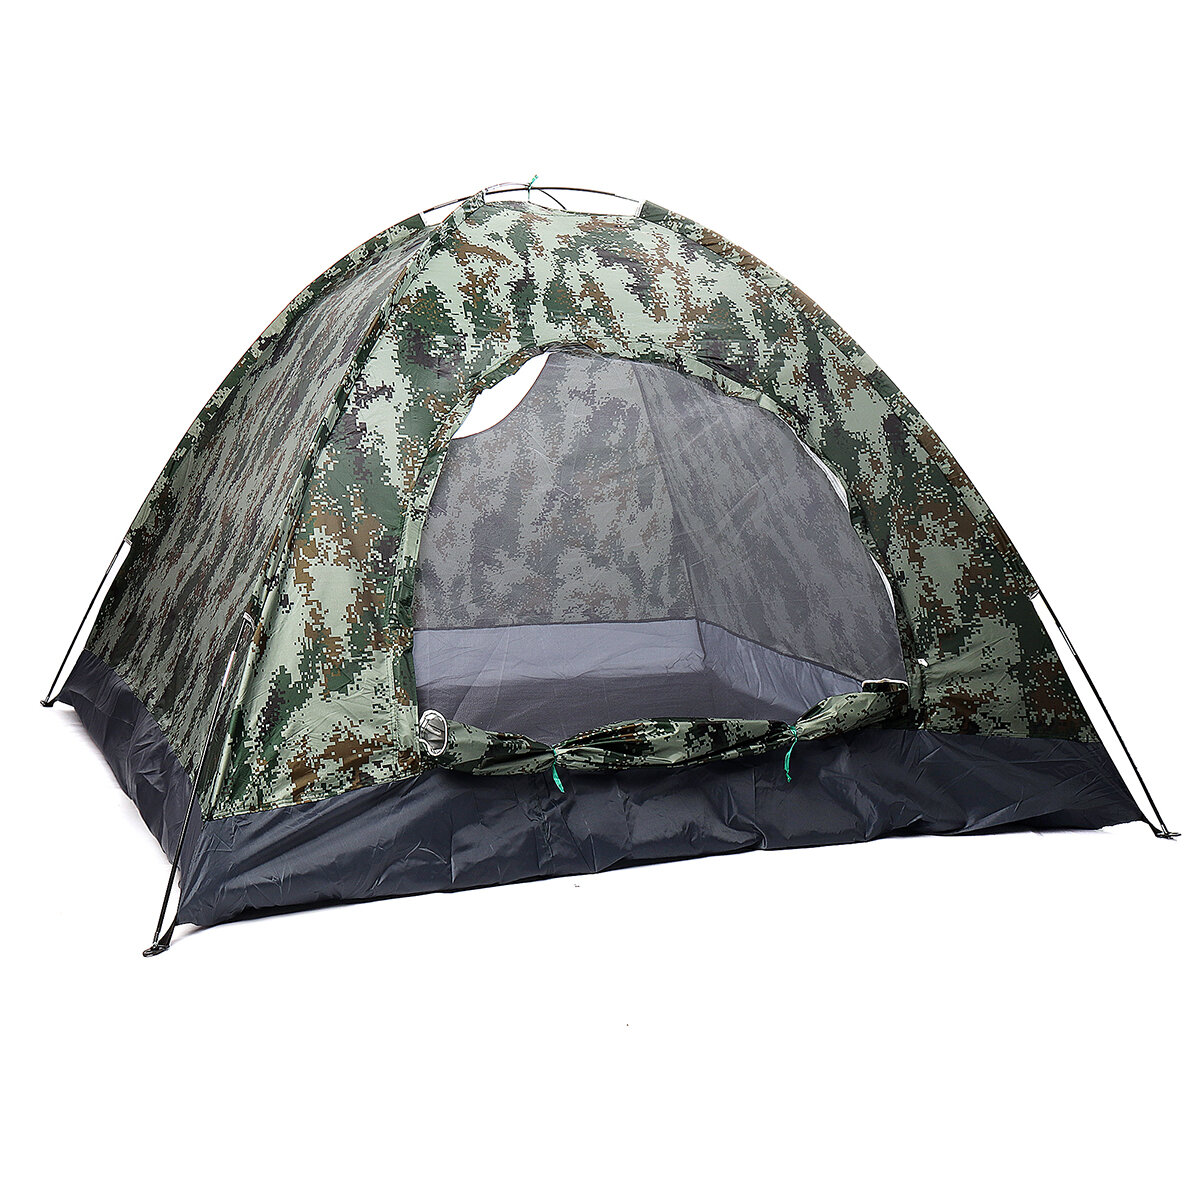 Tenda impermeabile con porta rotonda per 3-4 persone, per campeggio e trekking, forniture per il sonno all'aperto.